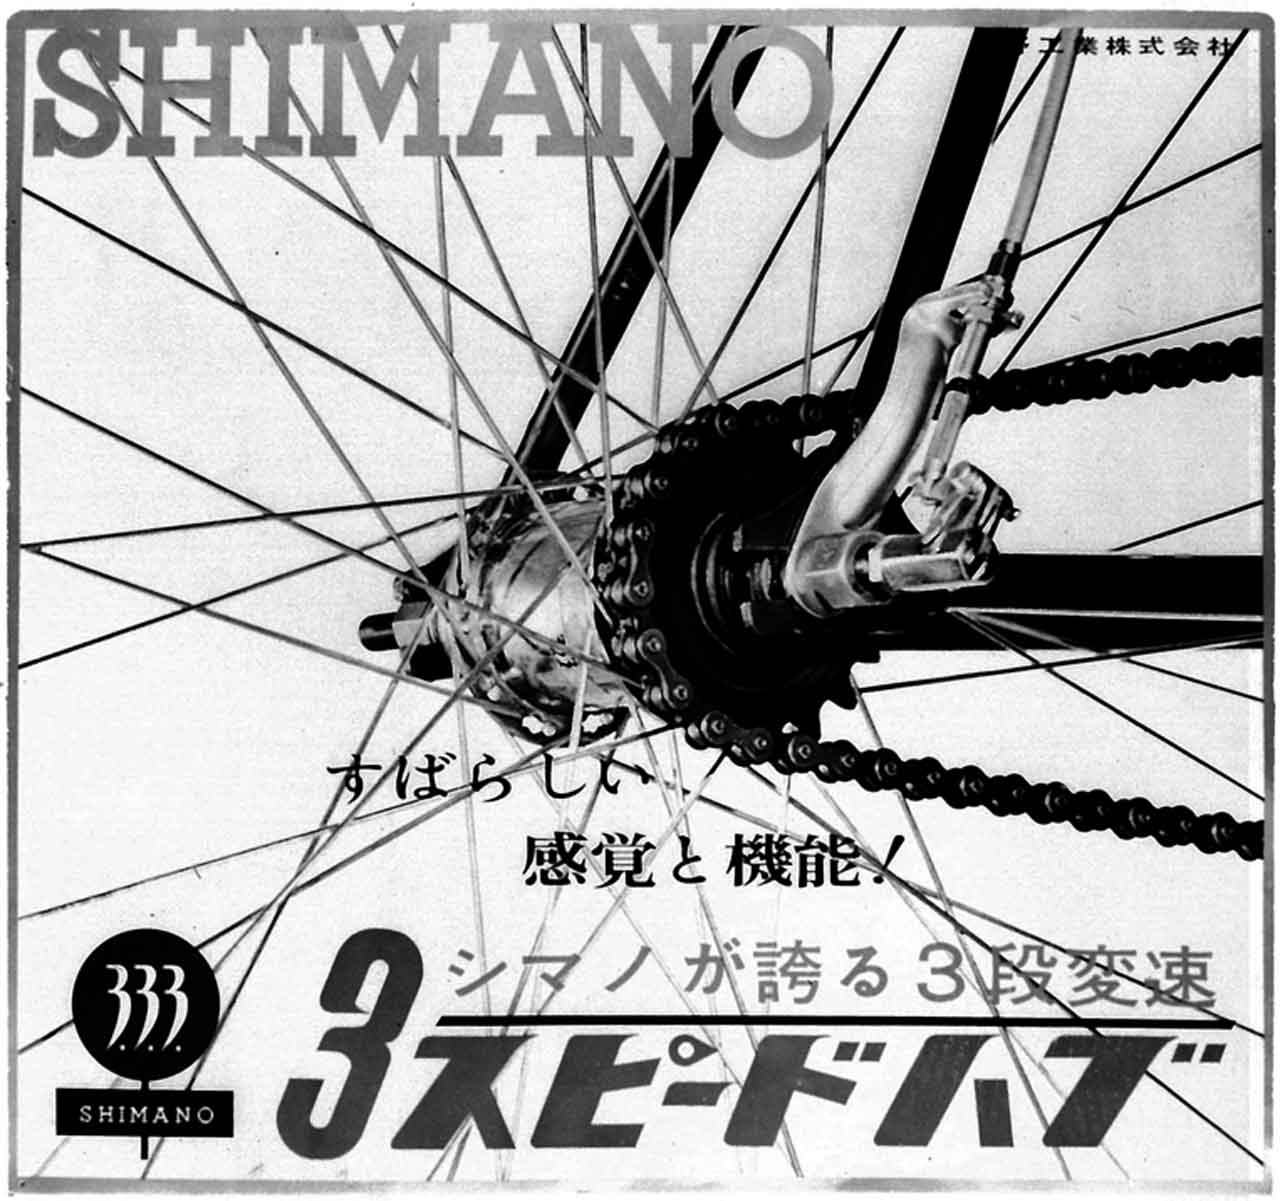 SHIMANO erreicht den Jahrhundert-Meilenstein